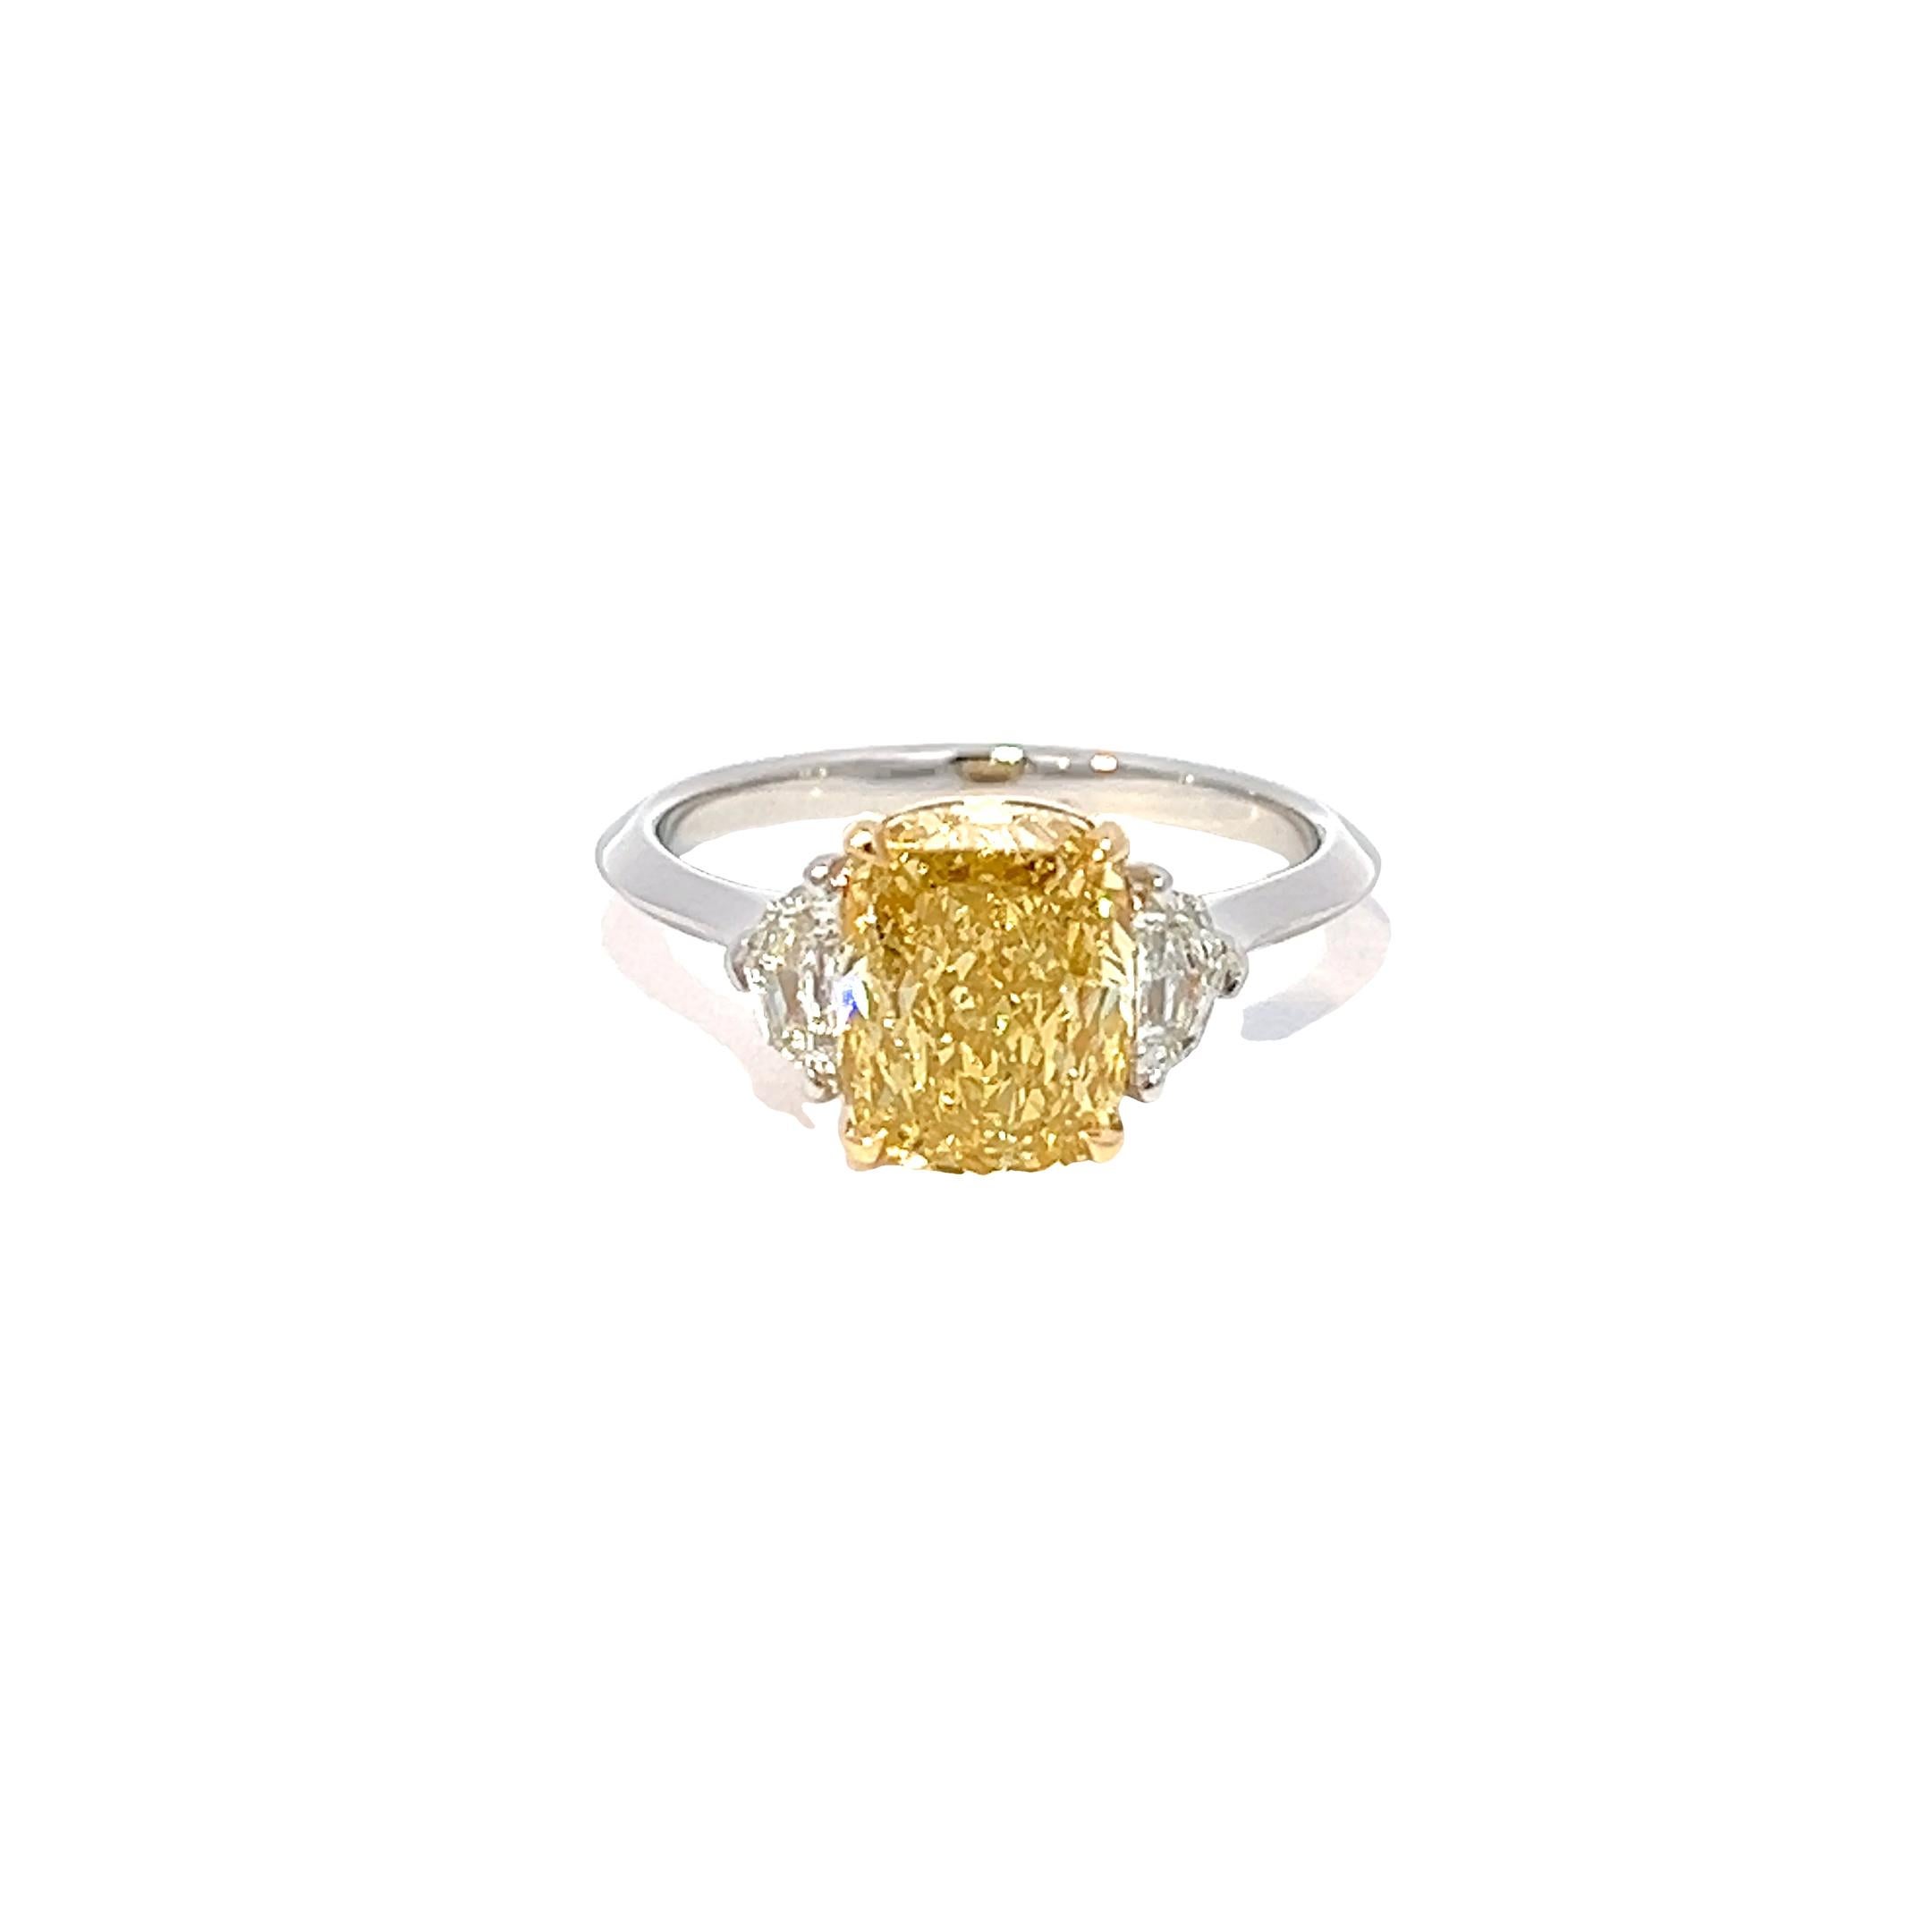 Voici une bague de fiançailles en diamant exquise, méticuleusement fabriquée à la perfection ! Il est orné d'un spectaculaire diamant jaune intense de 2,50 carats au centre, d'une pureté SI1+++, serti dans de l'or jaune 18 carats. La pierre centrale